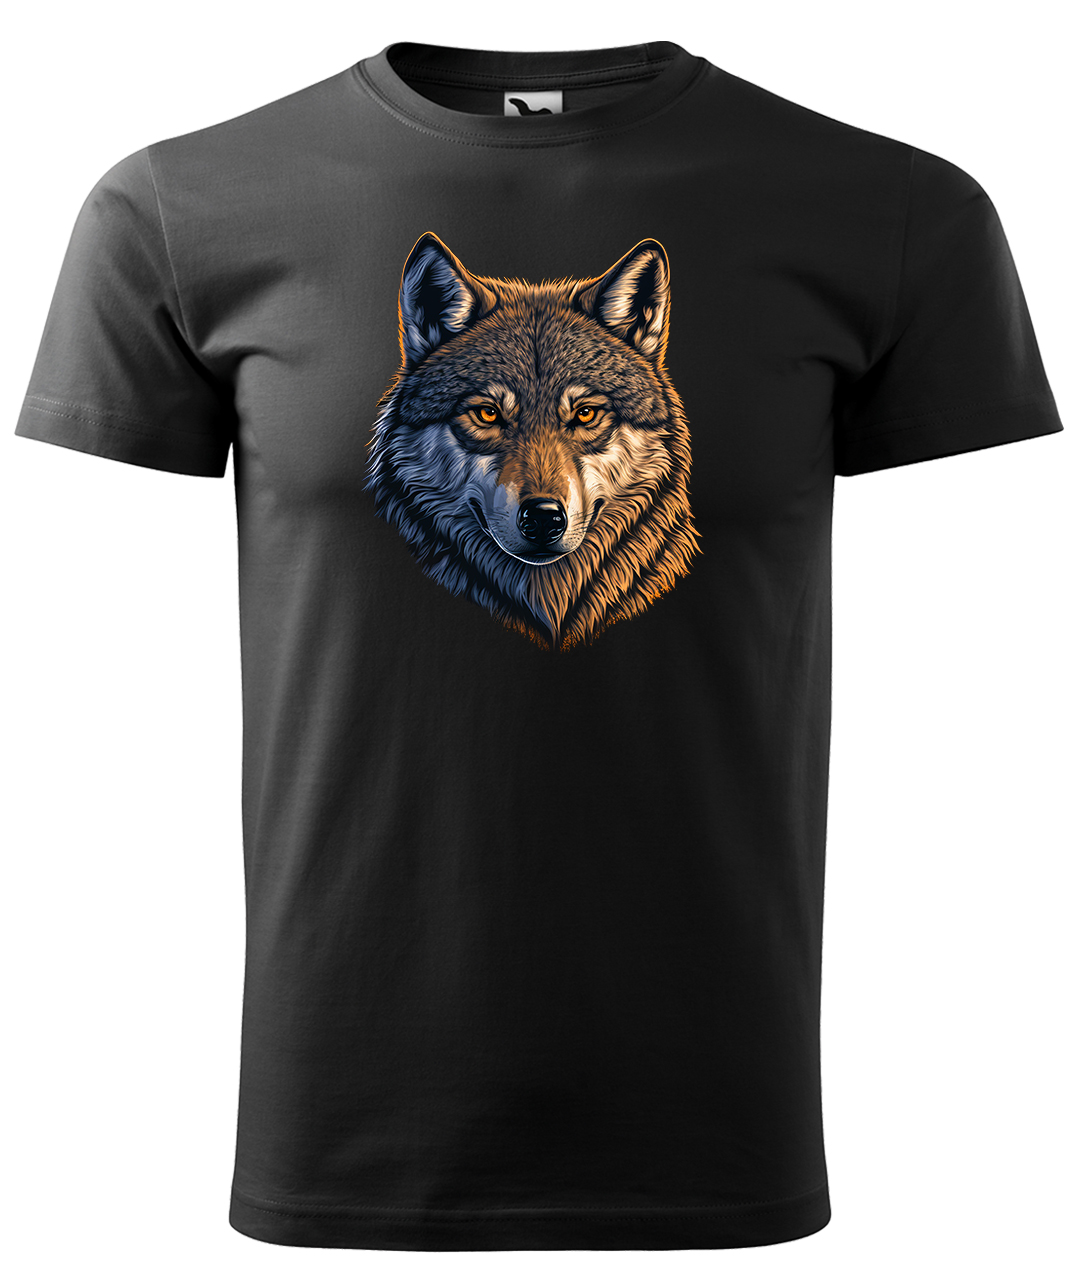 Dětské tričko s vlkem - Hlava vlka Velikost: 8 let / 134 cm, Barva: Černá (01), Délka rukávu: Krátký rukáv